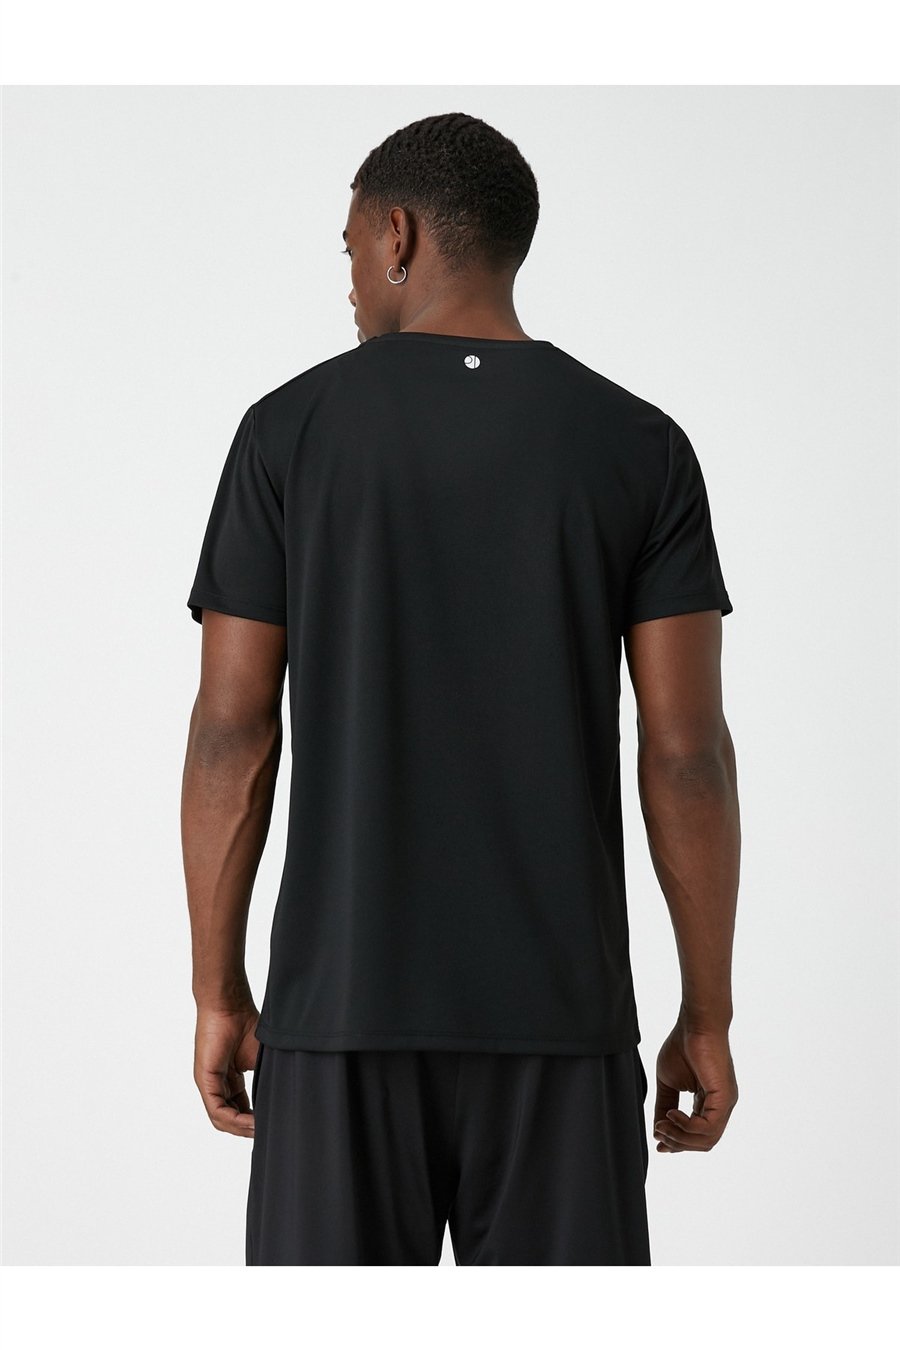 Koton 3Wam10071Nk Siyah 999 Erkek Polyester Jersey T-Shirt